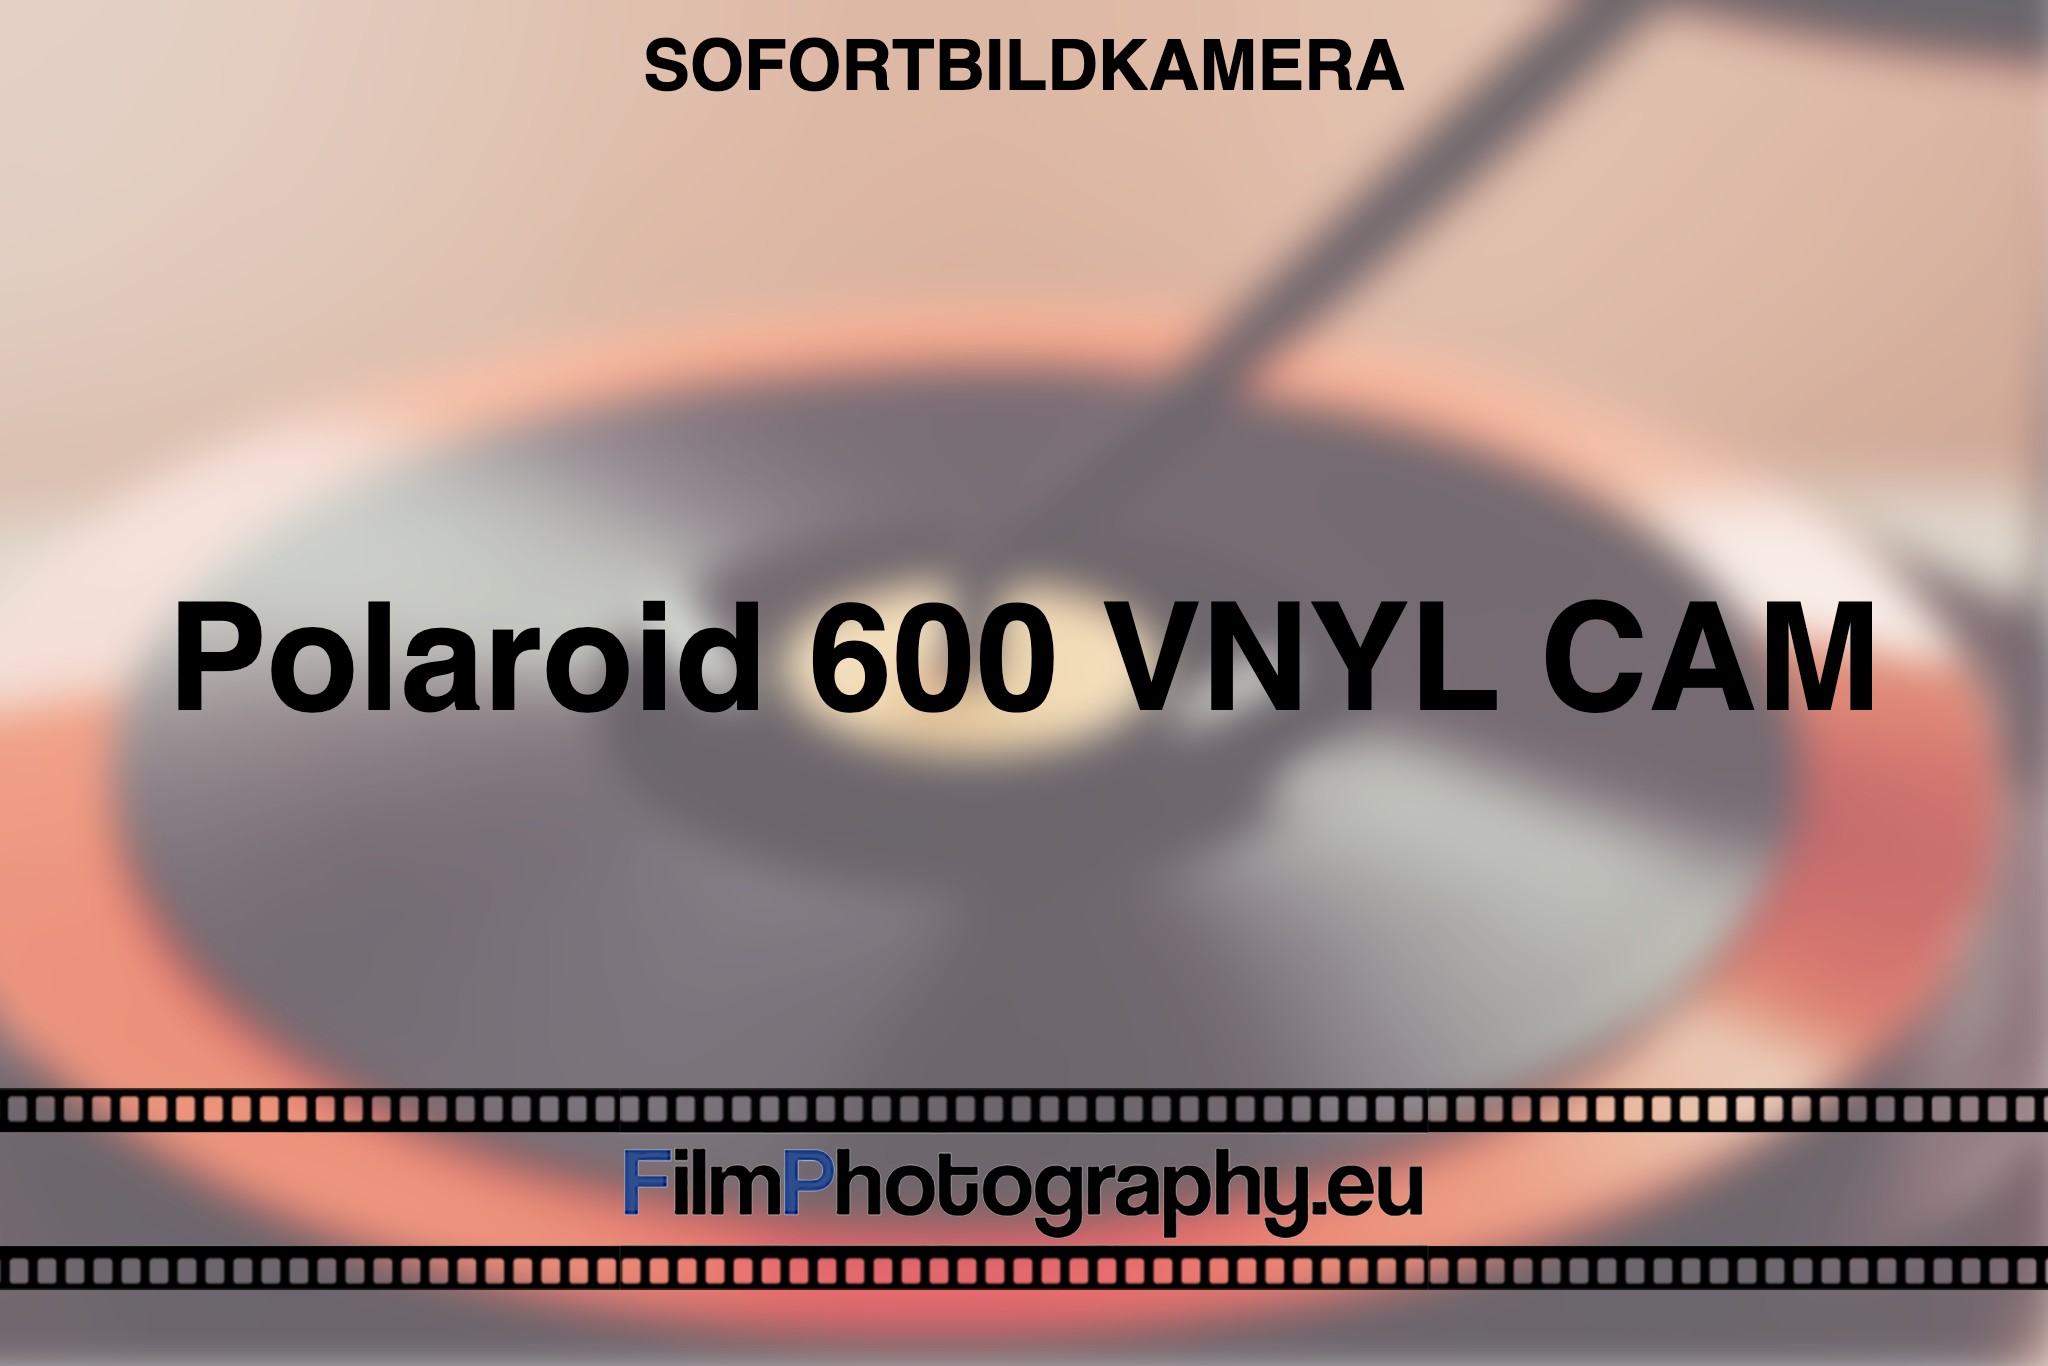 polaroid-600-vnyl-cam-sofortbildkamera-fp-bnv